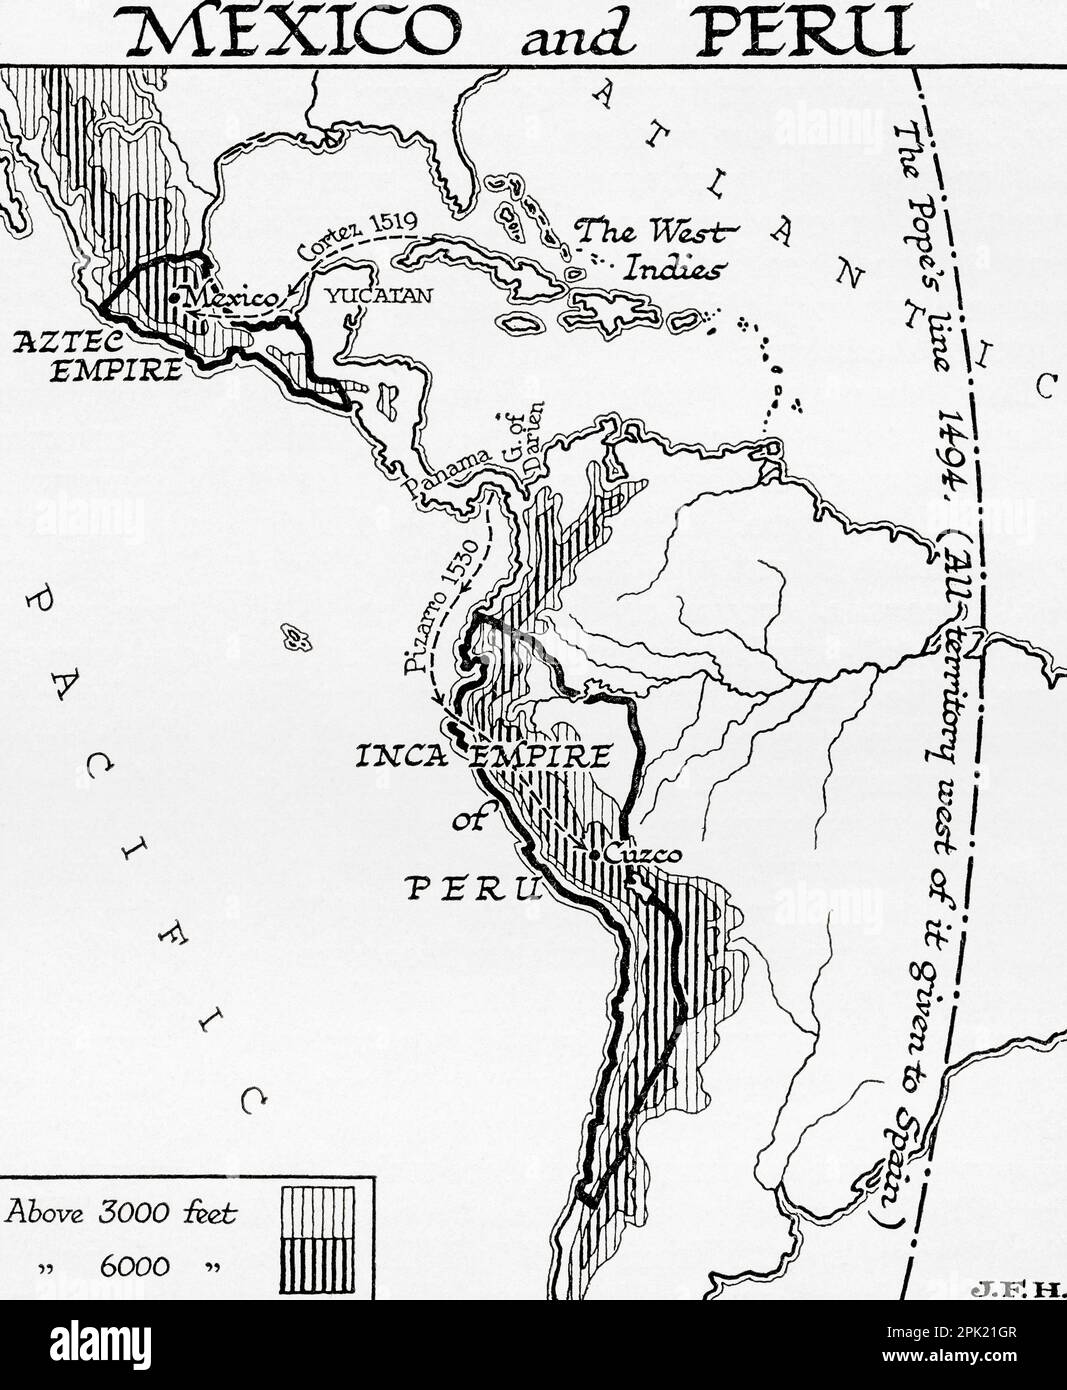 Mappa del Messico e del Perù, che mostra l'Impero Azteco e l'Impero Inca. È mostrata anche la linea nera in basso a destra della mappa che indica il trattato di Tordesillas, 1494, Che divise le terre scoperte di recente fuori dall'Europa tra l'Impero Portoghese e l'Impero Spagnolo (Corona di Castiglia), lungo un meridiano 370 leghe ad ovest delle isole di Capo Verde, al largo della costa occidentale dell'Africa. Quella linea di demarcazione era circa a metà strada tra le isole di Capo Verde (già portoghesi) e le isole visitate da Cristoforo Colombo nel suo primo viaggio (rivendicato per Castiglia e León), chiamato i Foto Stock